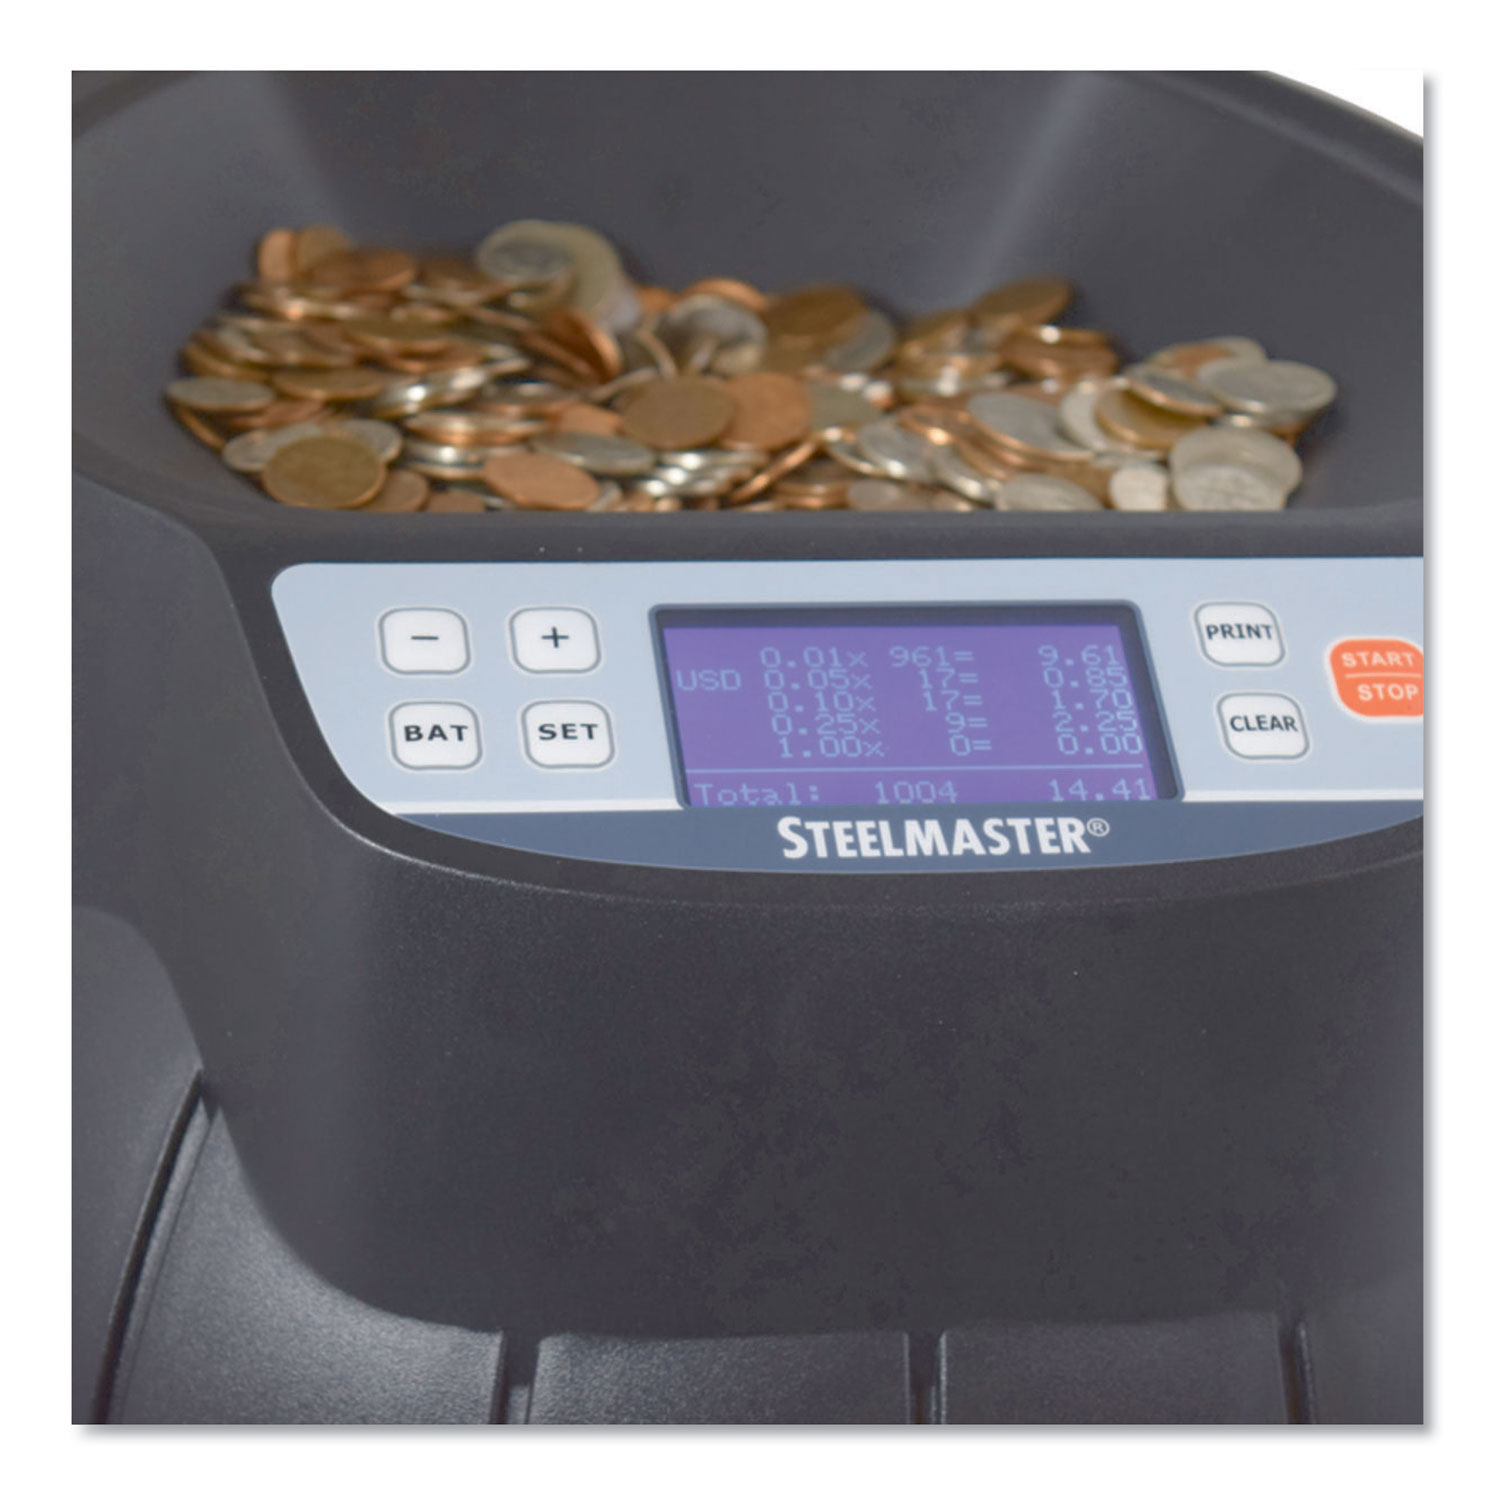 Steelmaster. 200200C Coin Counter/Sorter, Pennies Through Dollar Coins